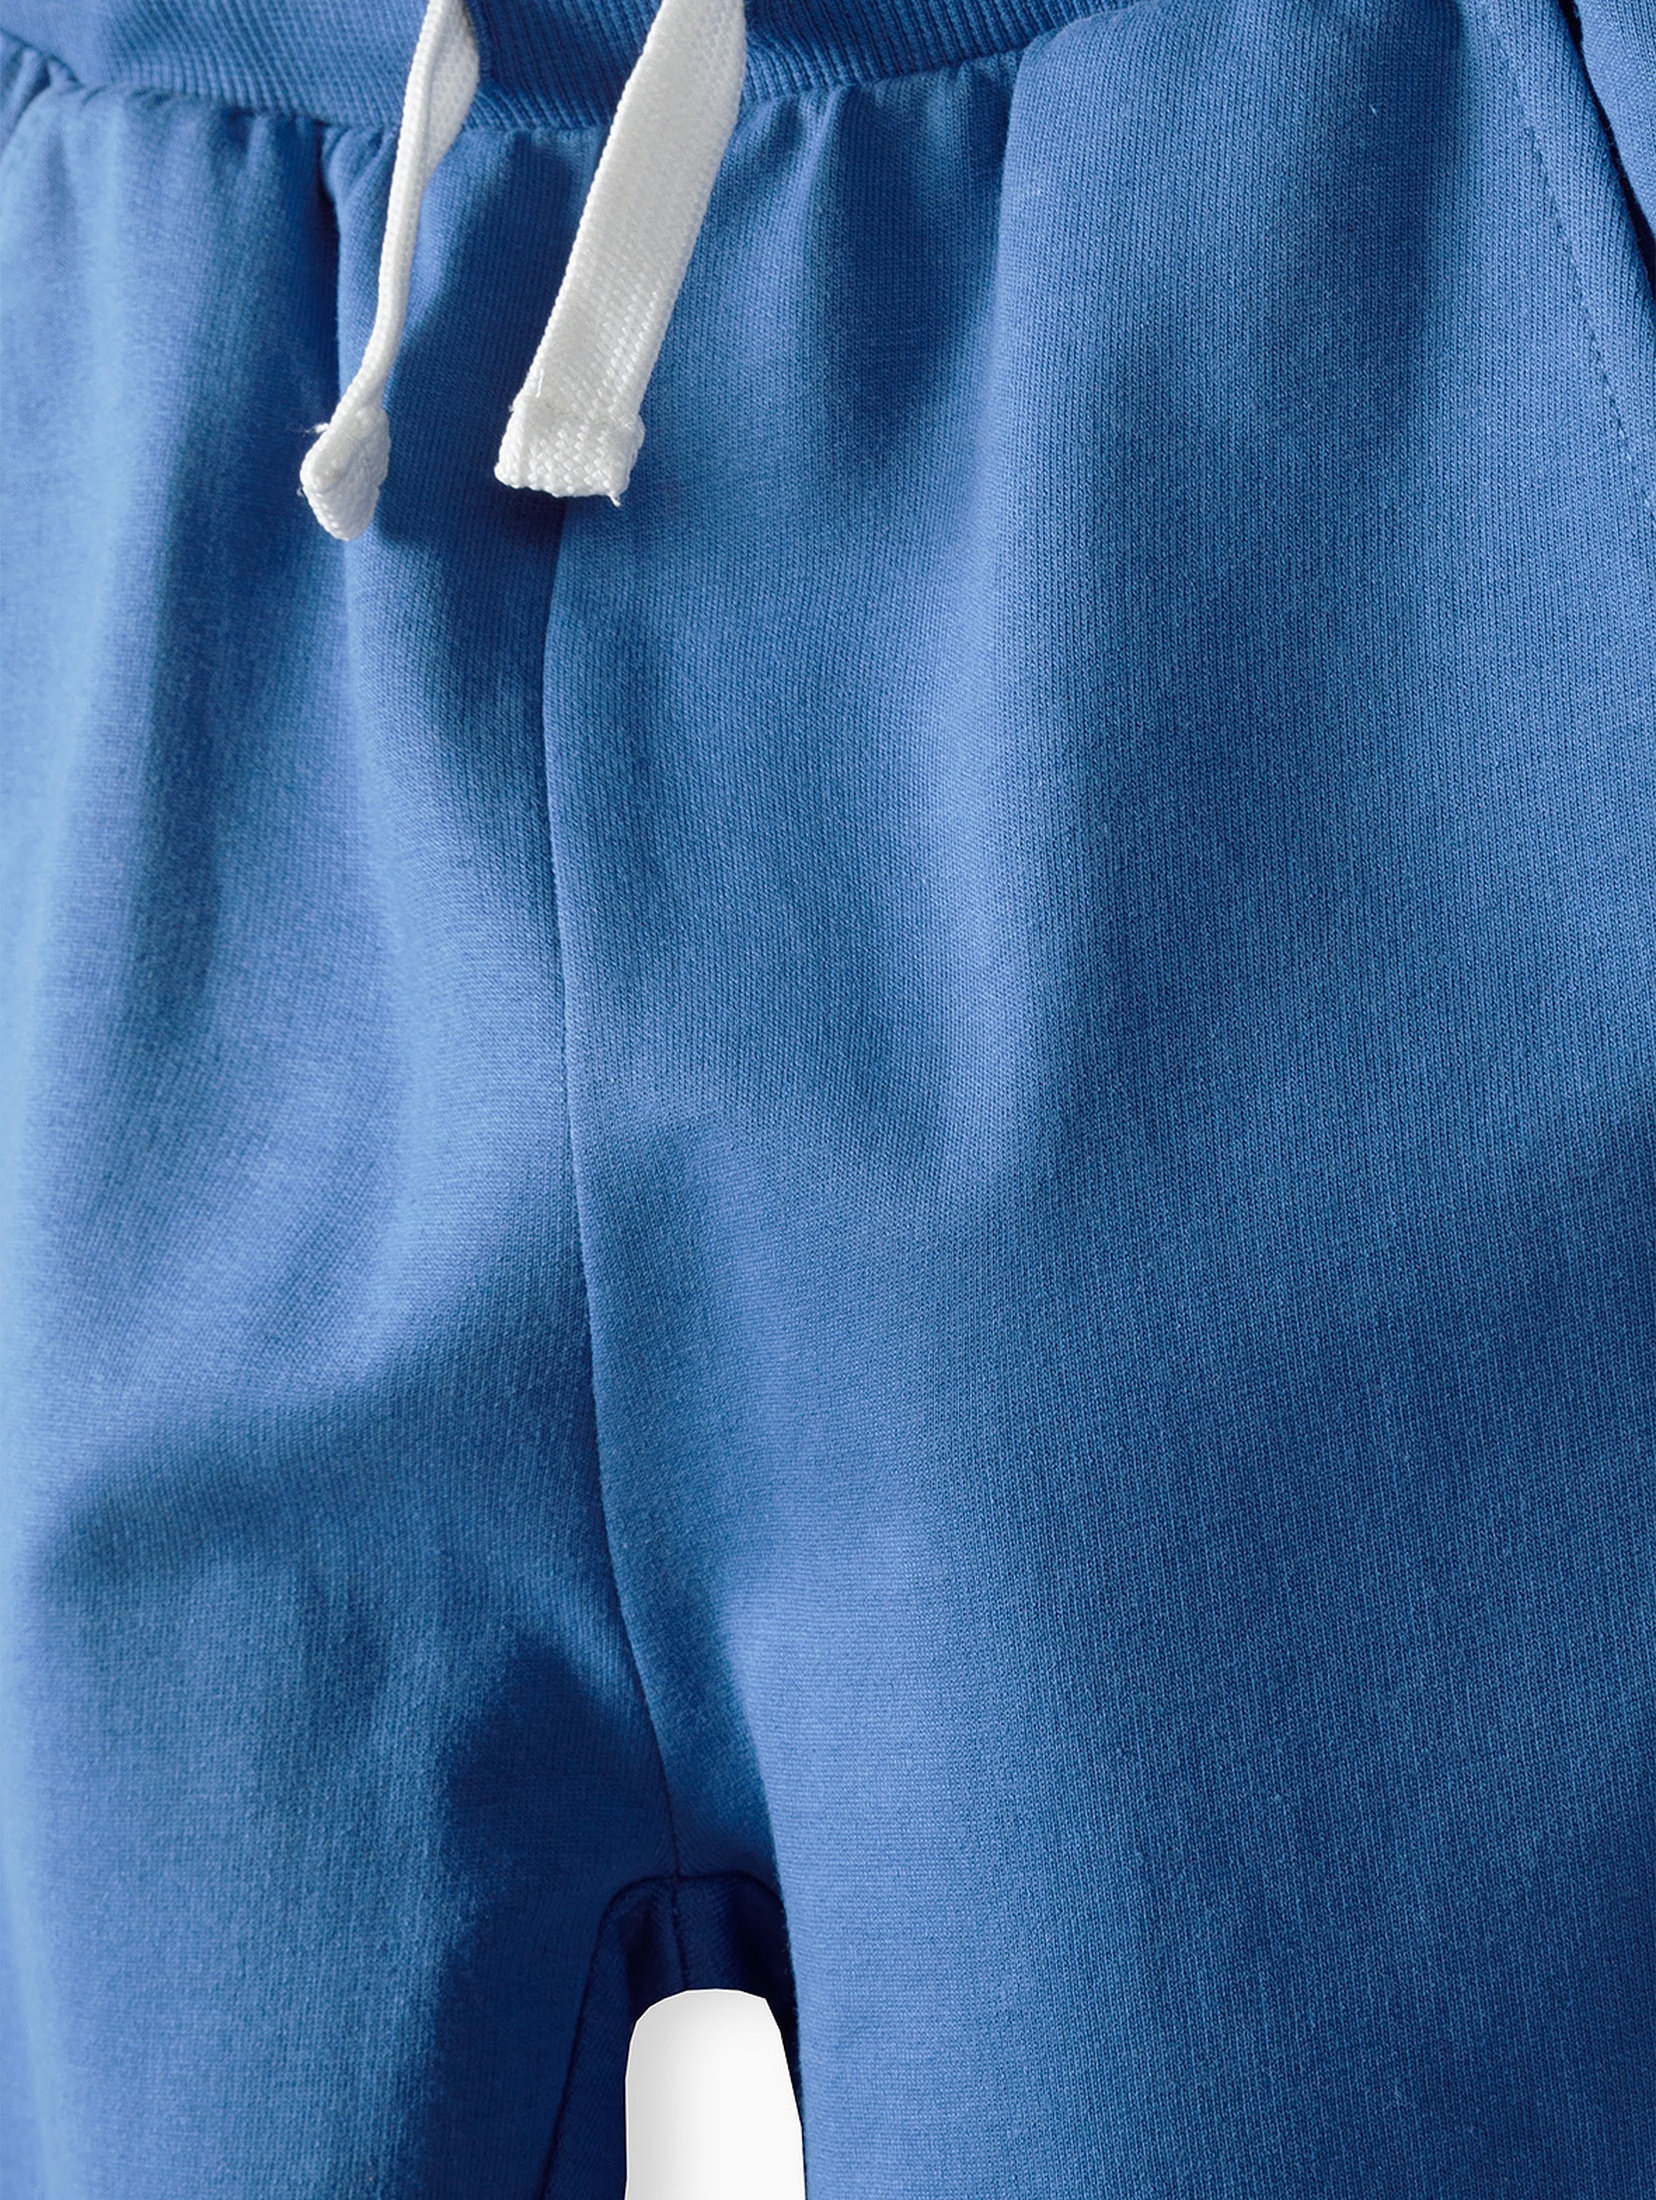 Spodnie dresowe dla chłopca bawełniane niebieskie z napisem